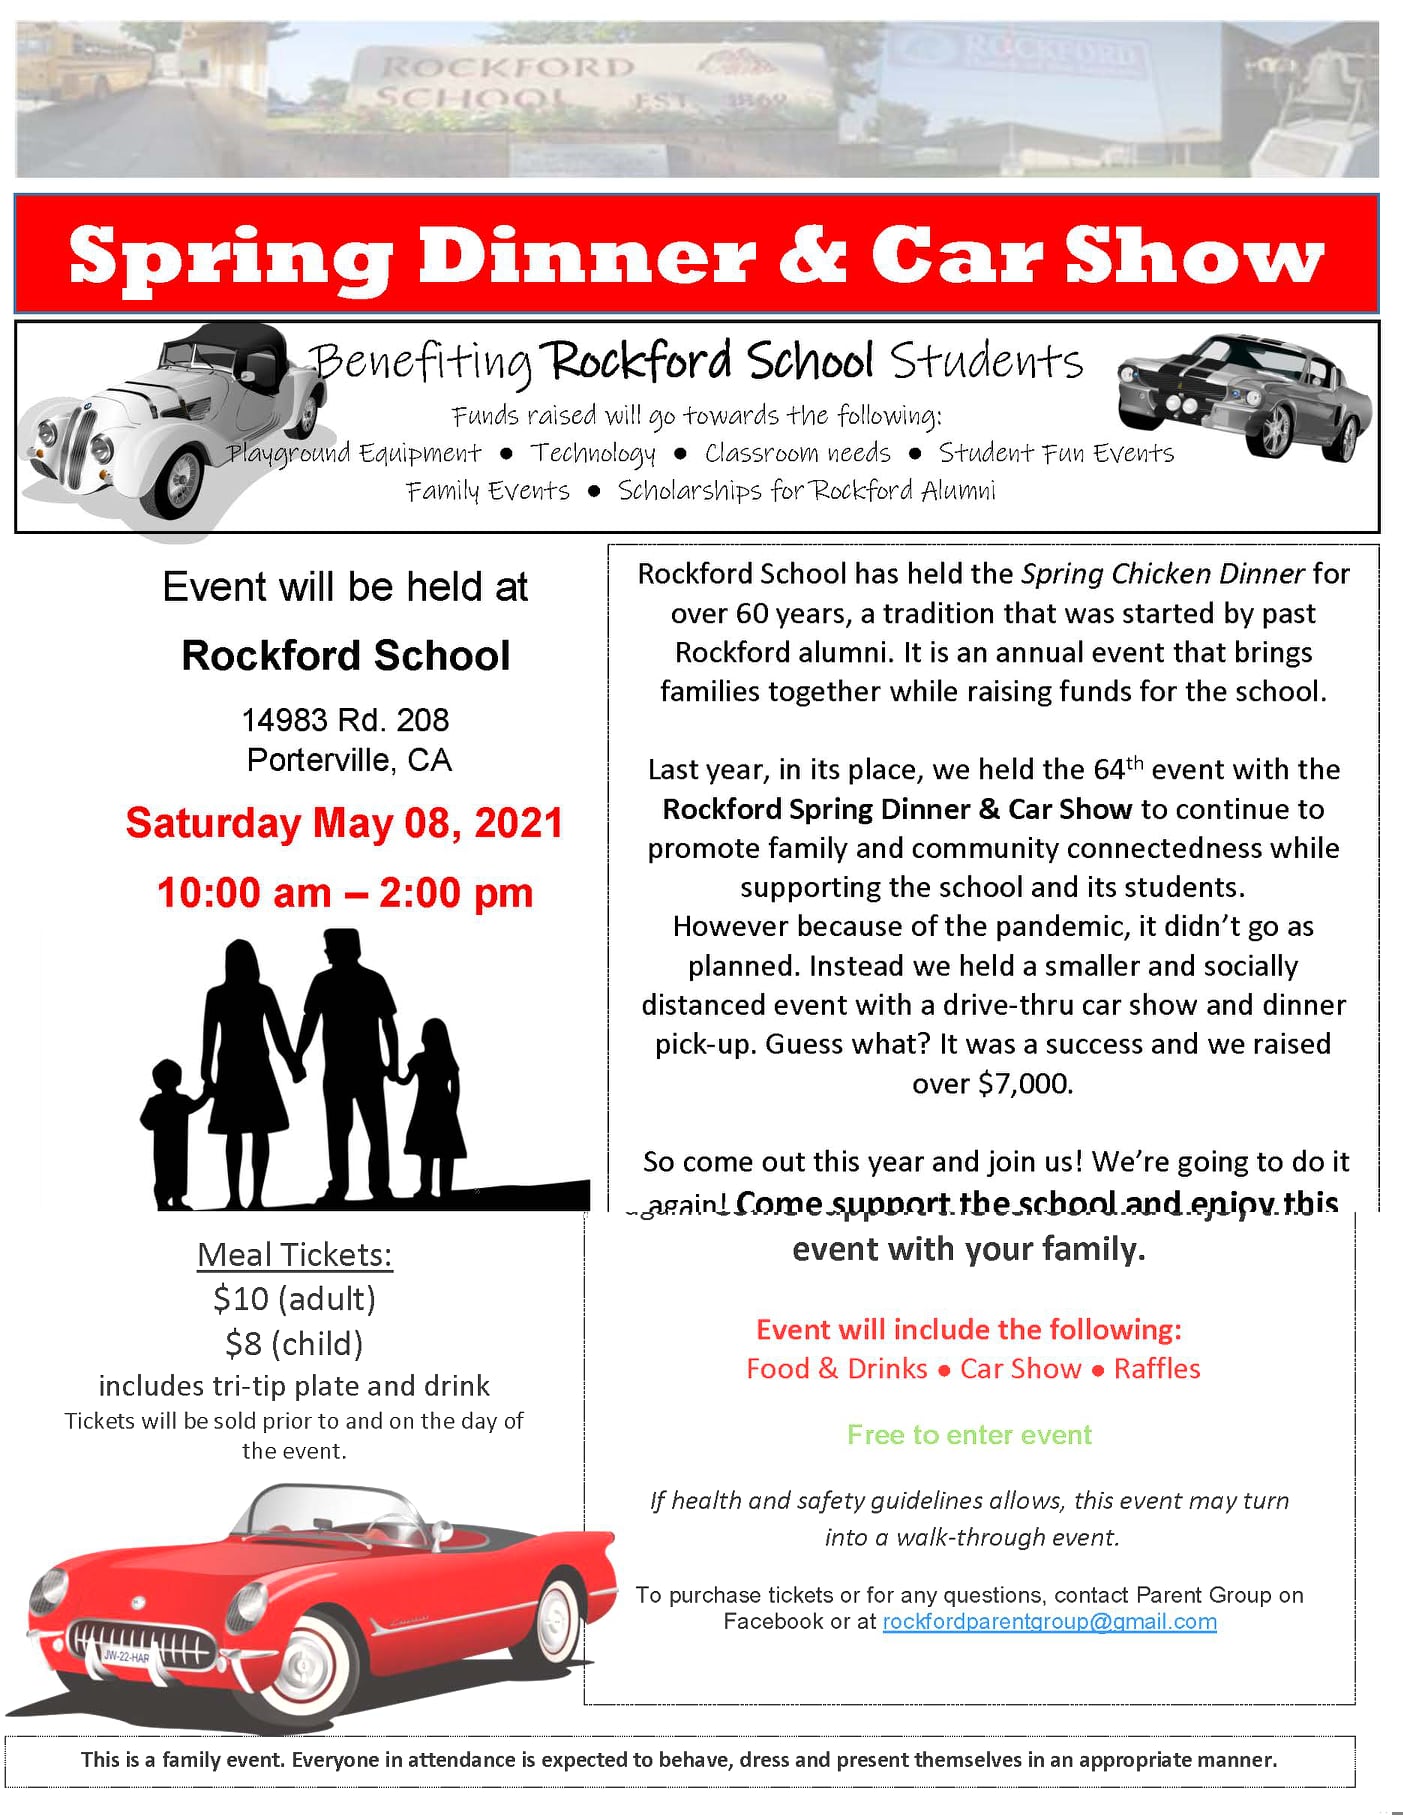 Rockford School Spring Dinner & Car Show